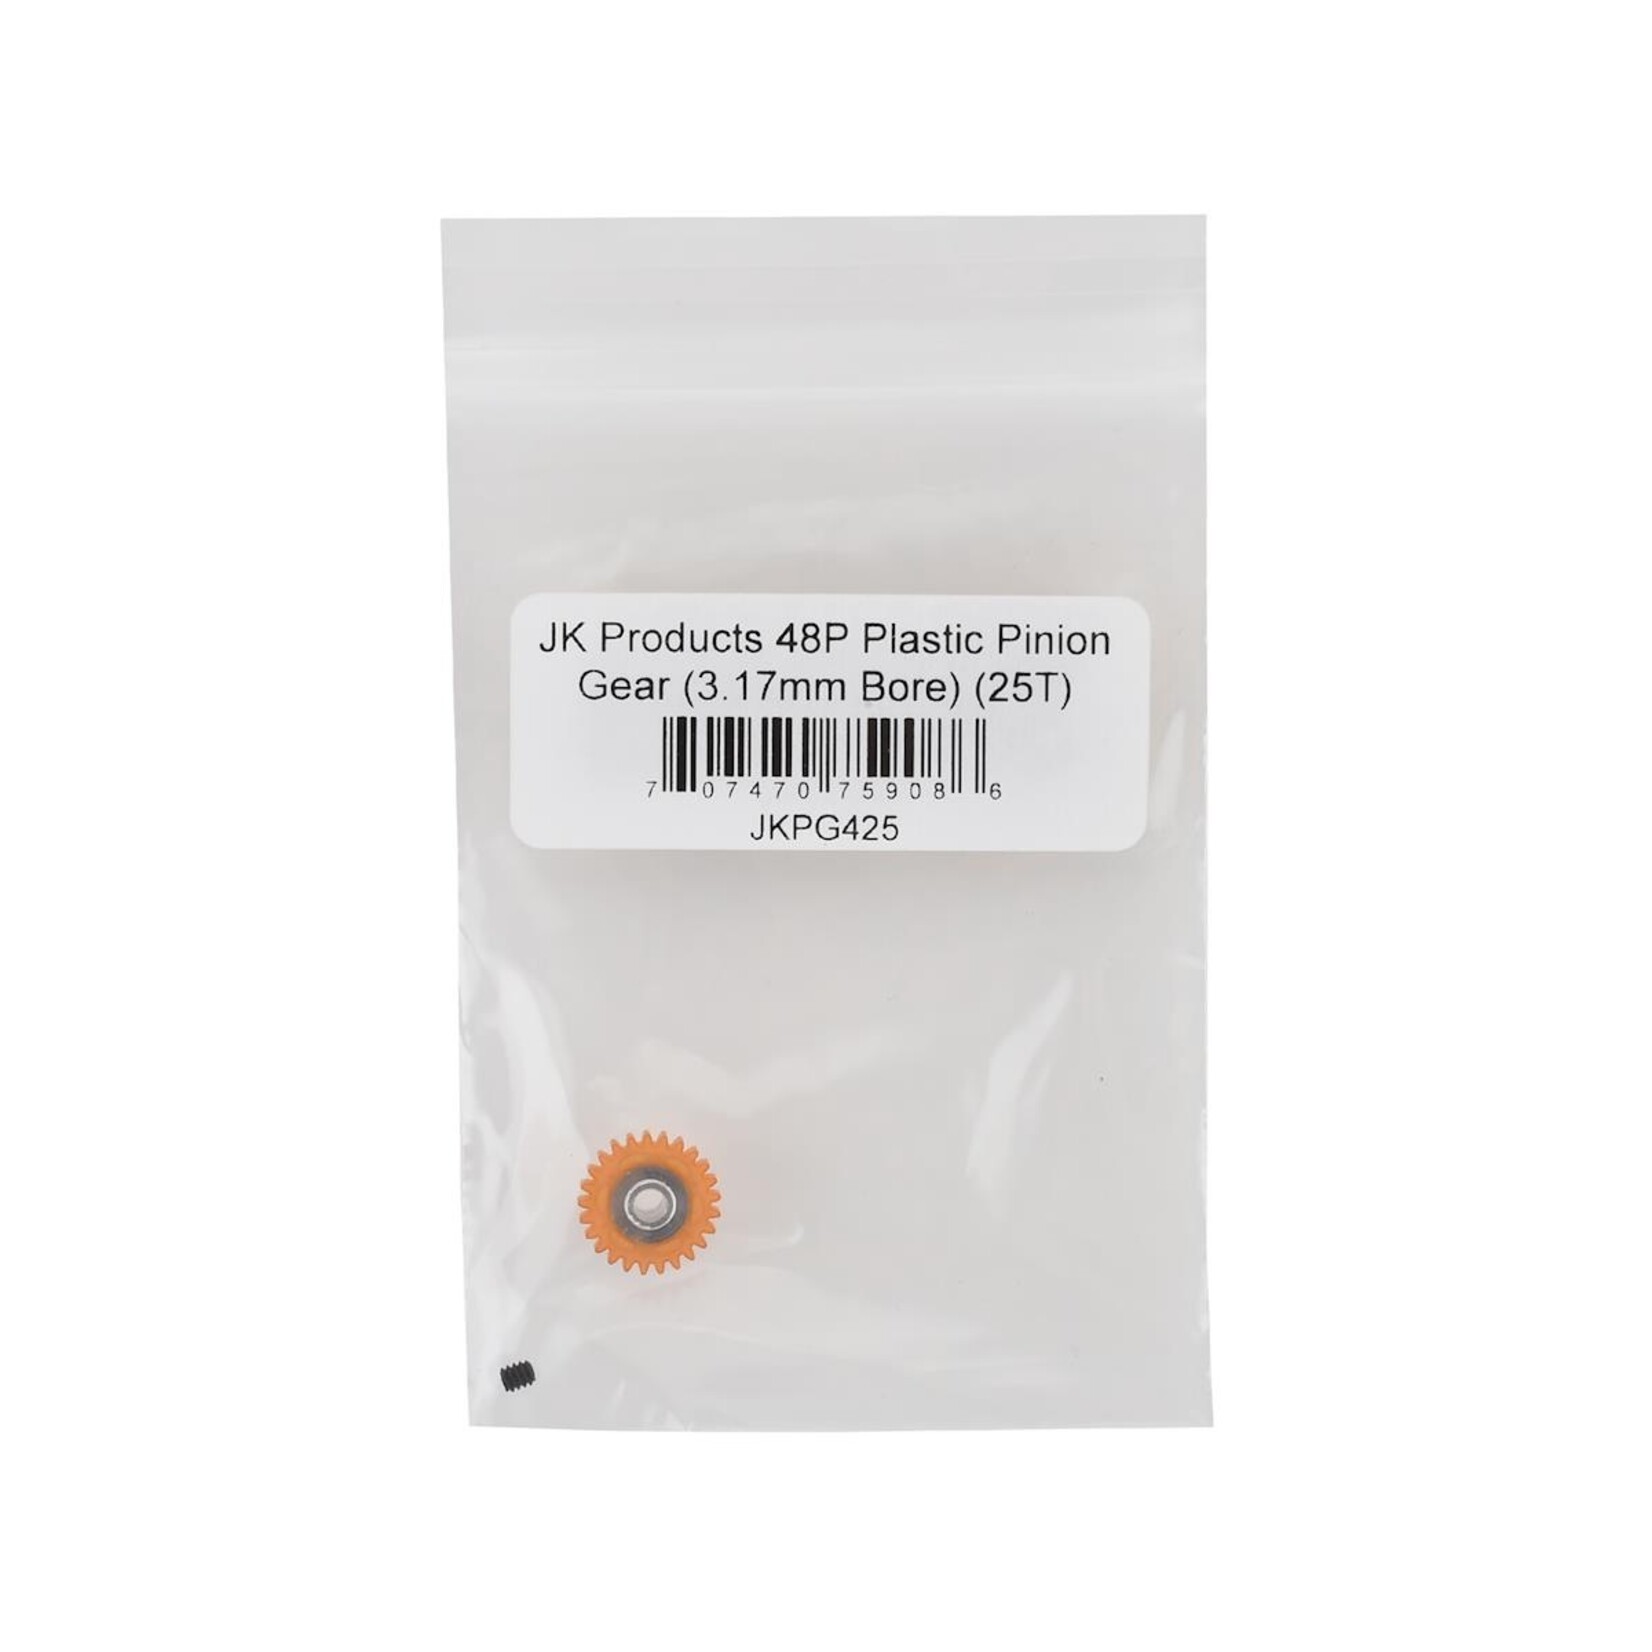 JK Products JK Products 48P Plastic Pinion Gear (3.17mm Bore) (25T) #JKPG425